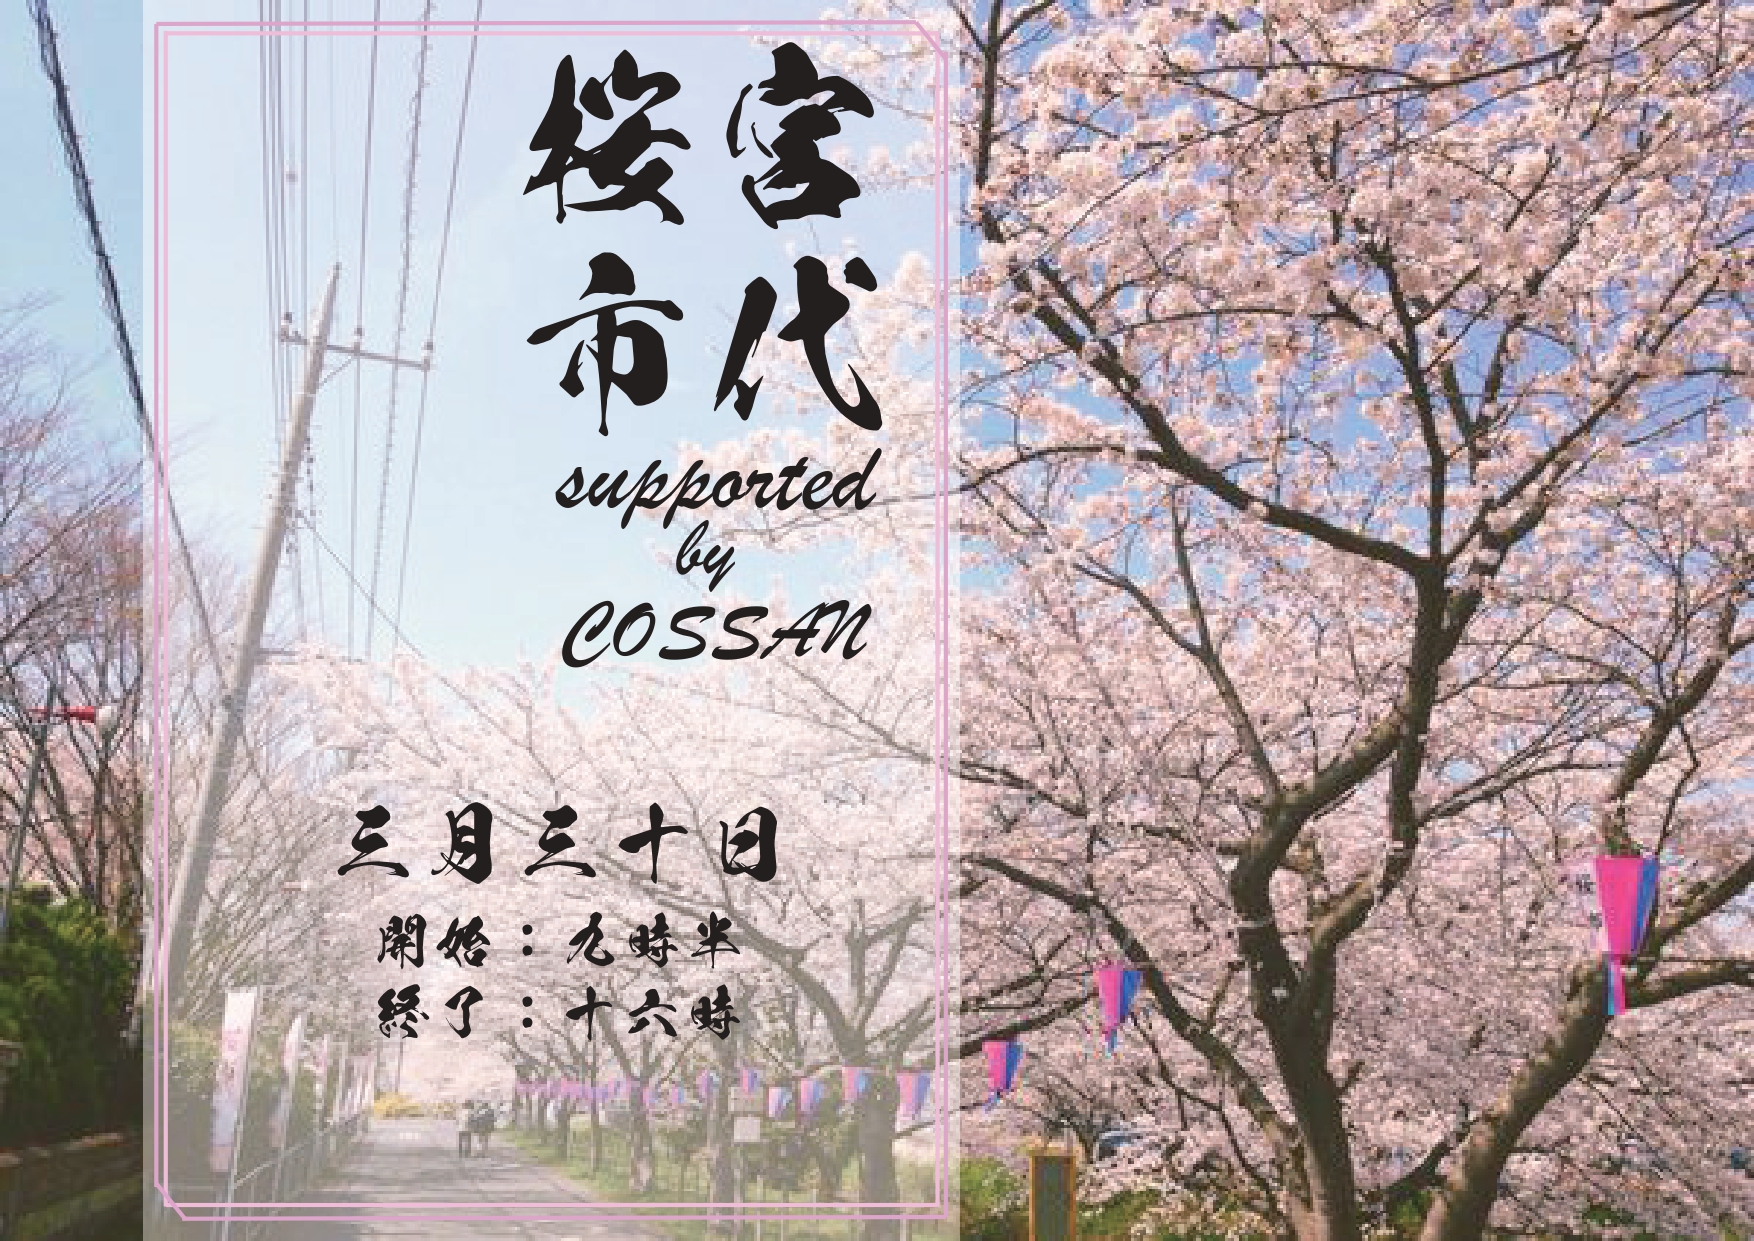 3/30 桜市2024 supported by COSSAN